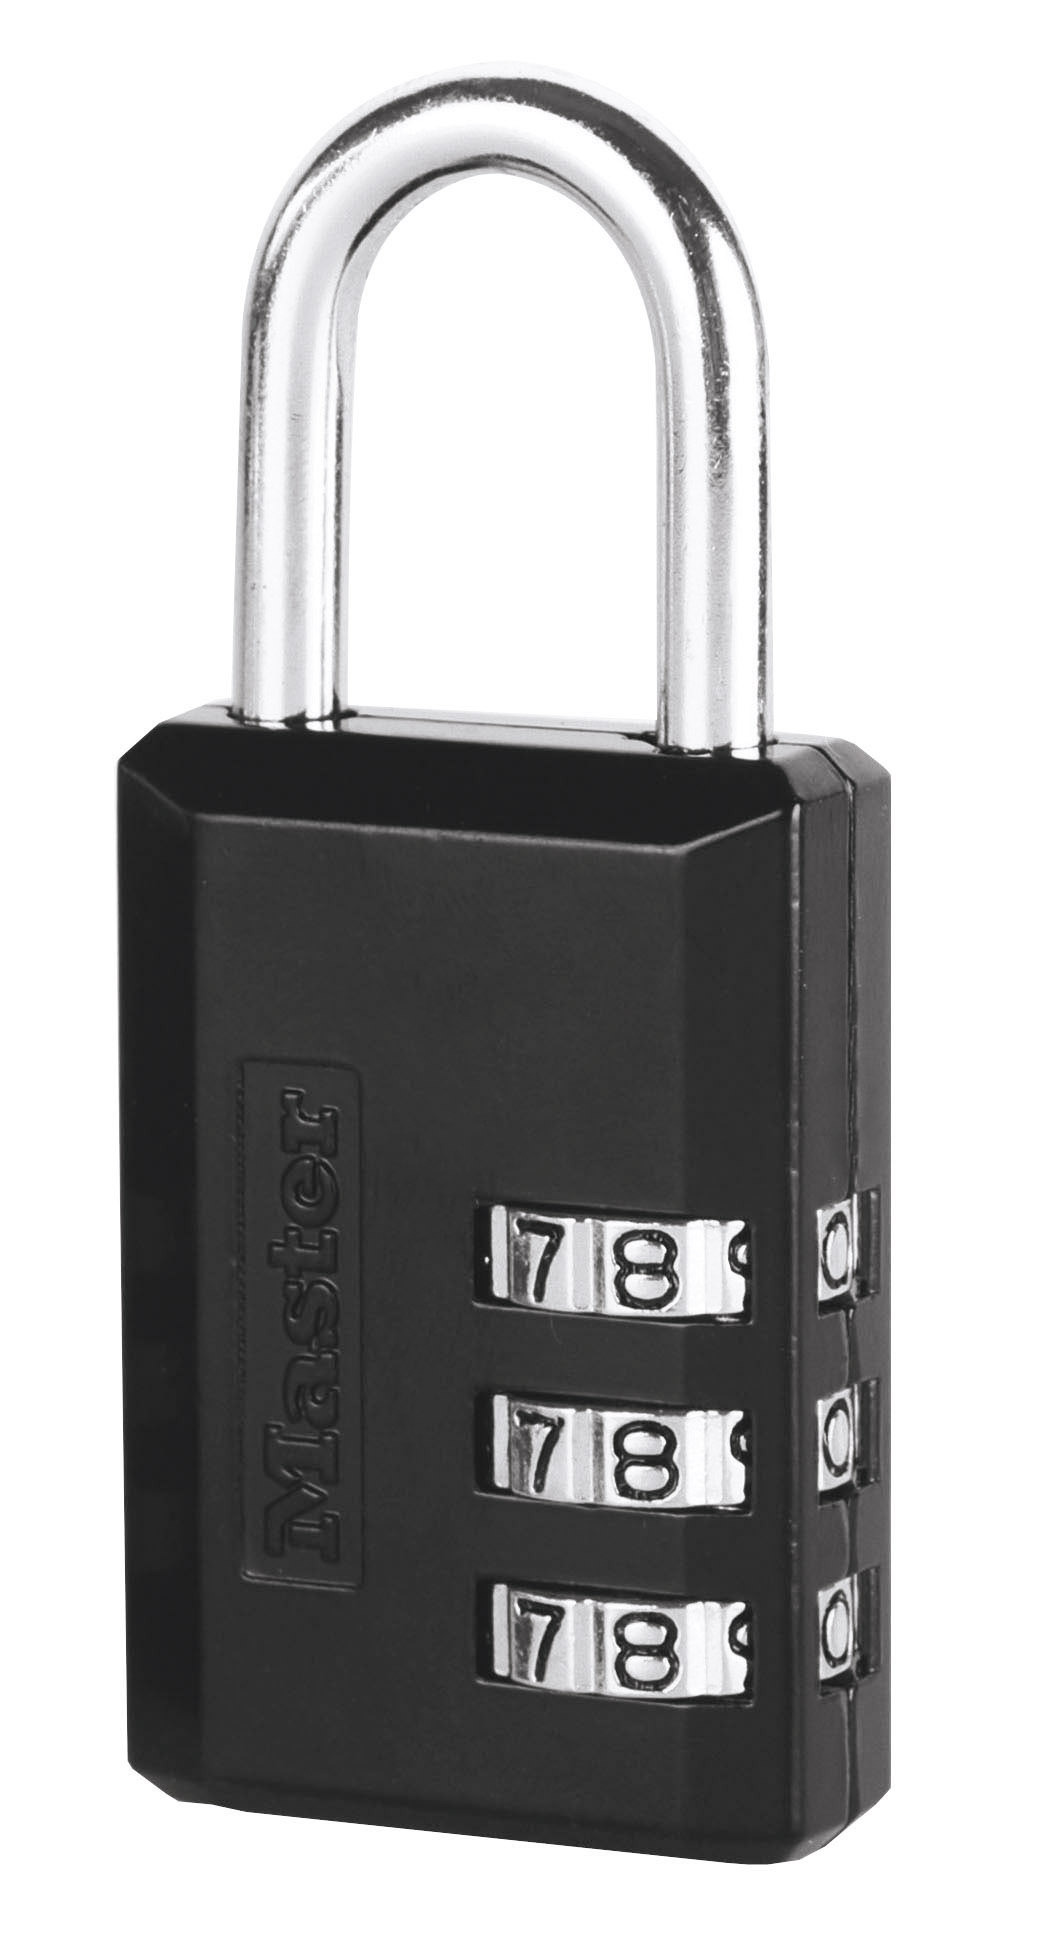 Masterlock 30 mm breed hangslot met vrije combinatiekeuze; zwart